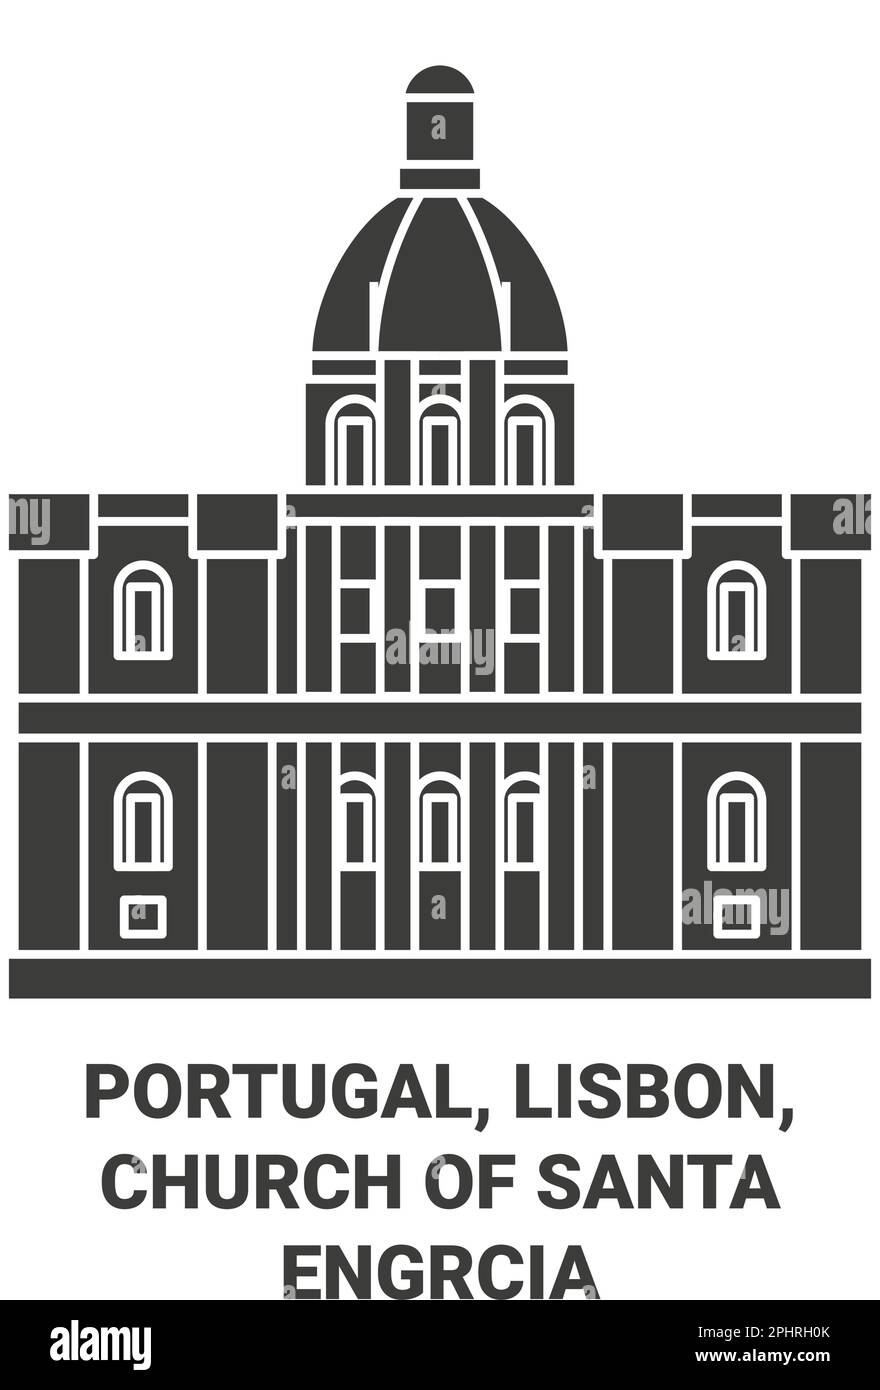 Portugal, Lisbonne, Eglise de Santa Engrcia Voyage repère illustration vecteur Illustration de Vecteur